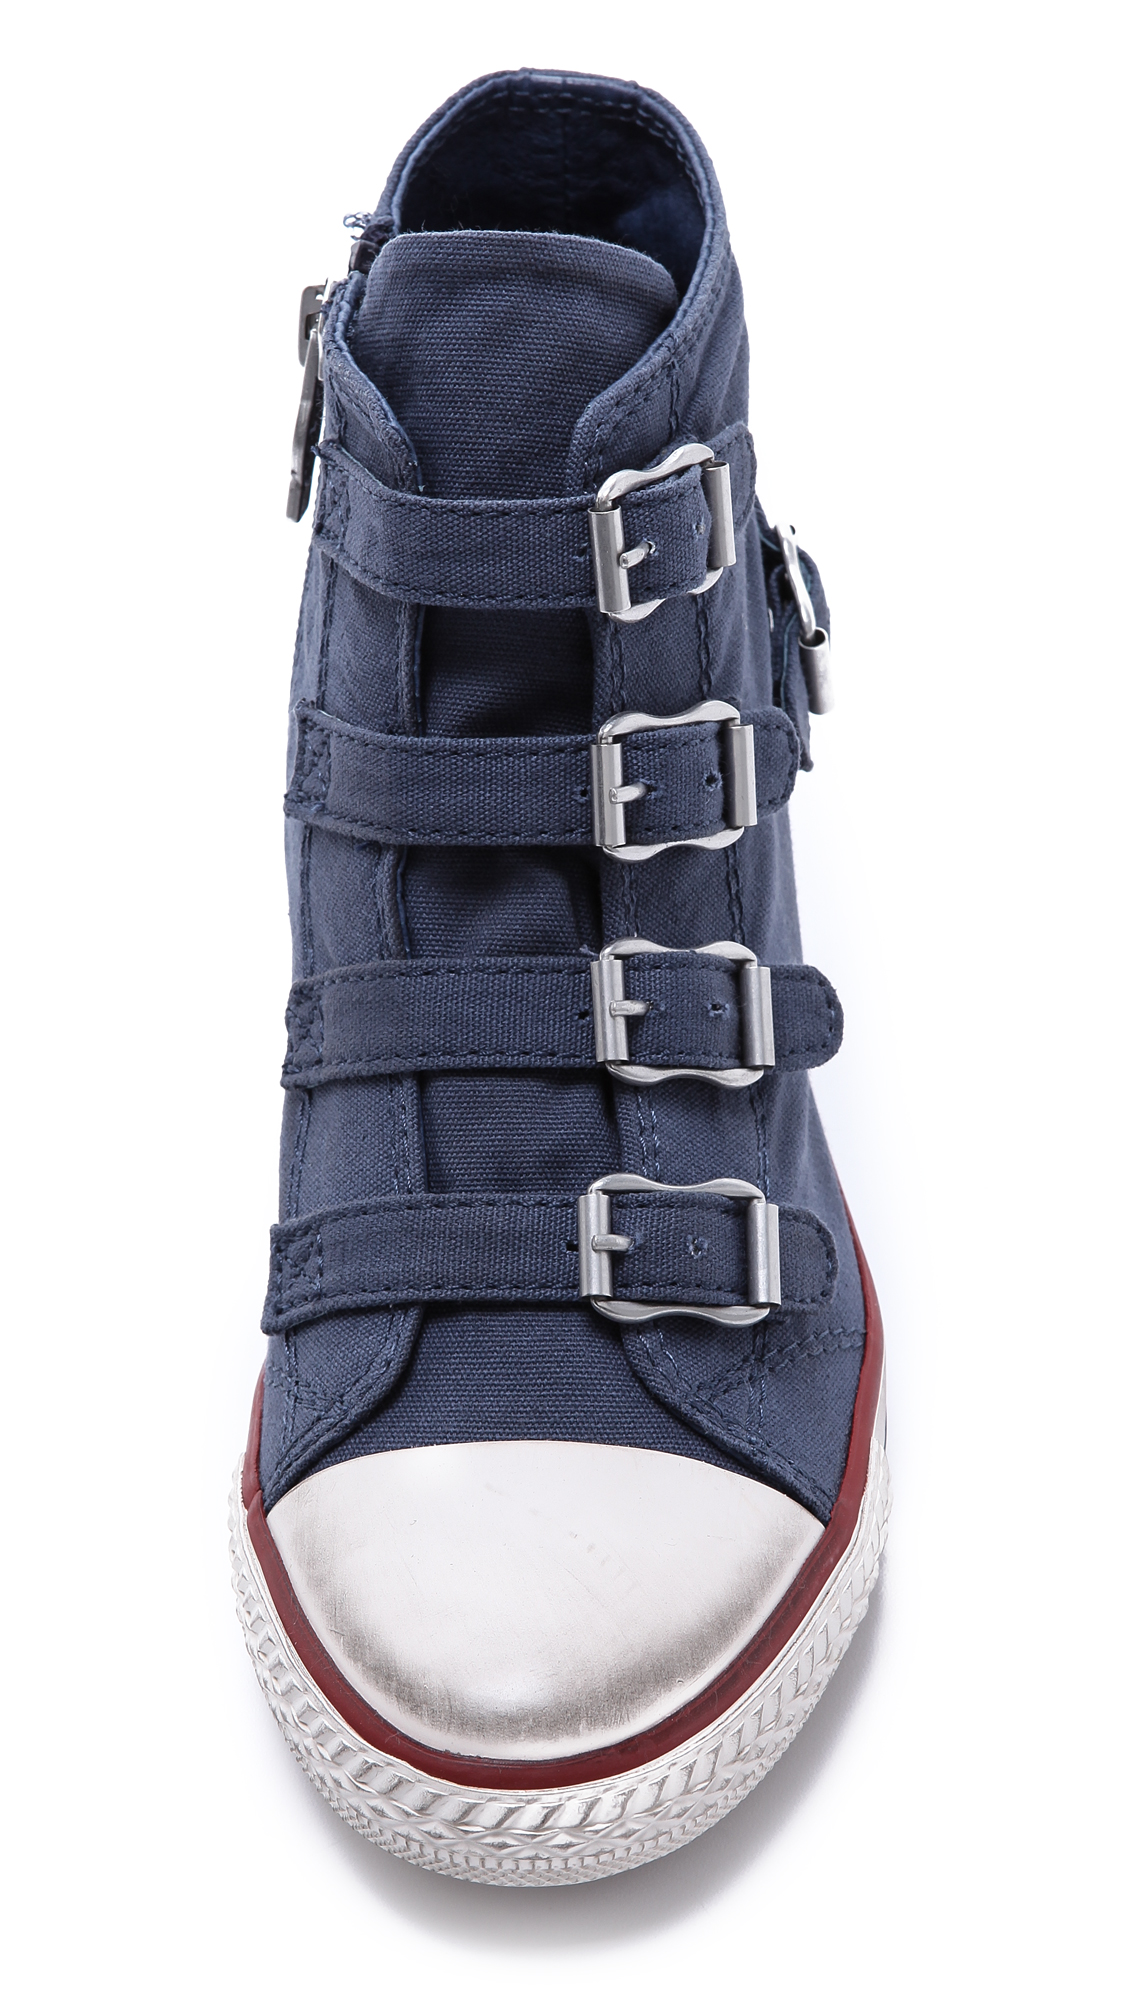 Ash Genial Bis Wedge Sneakers in Navy (Blue) - Lyst